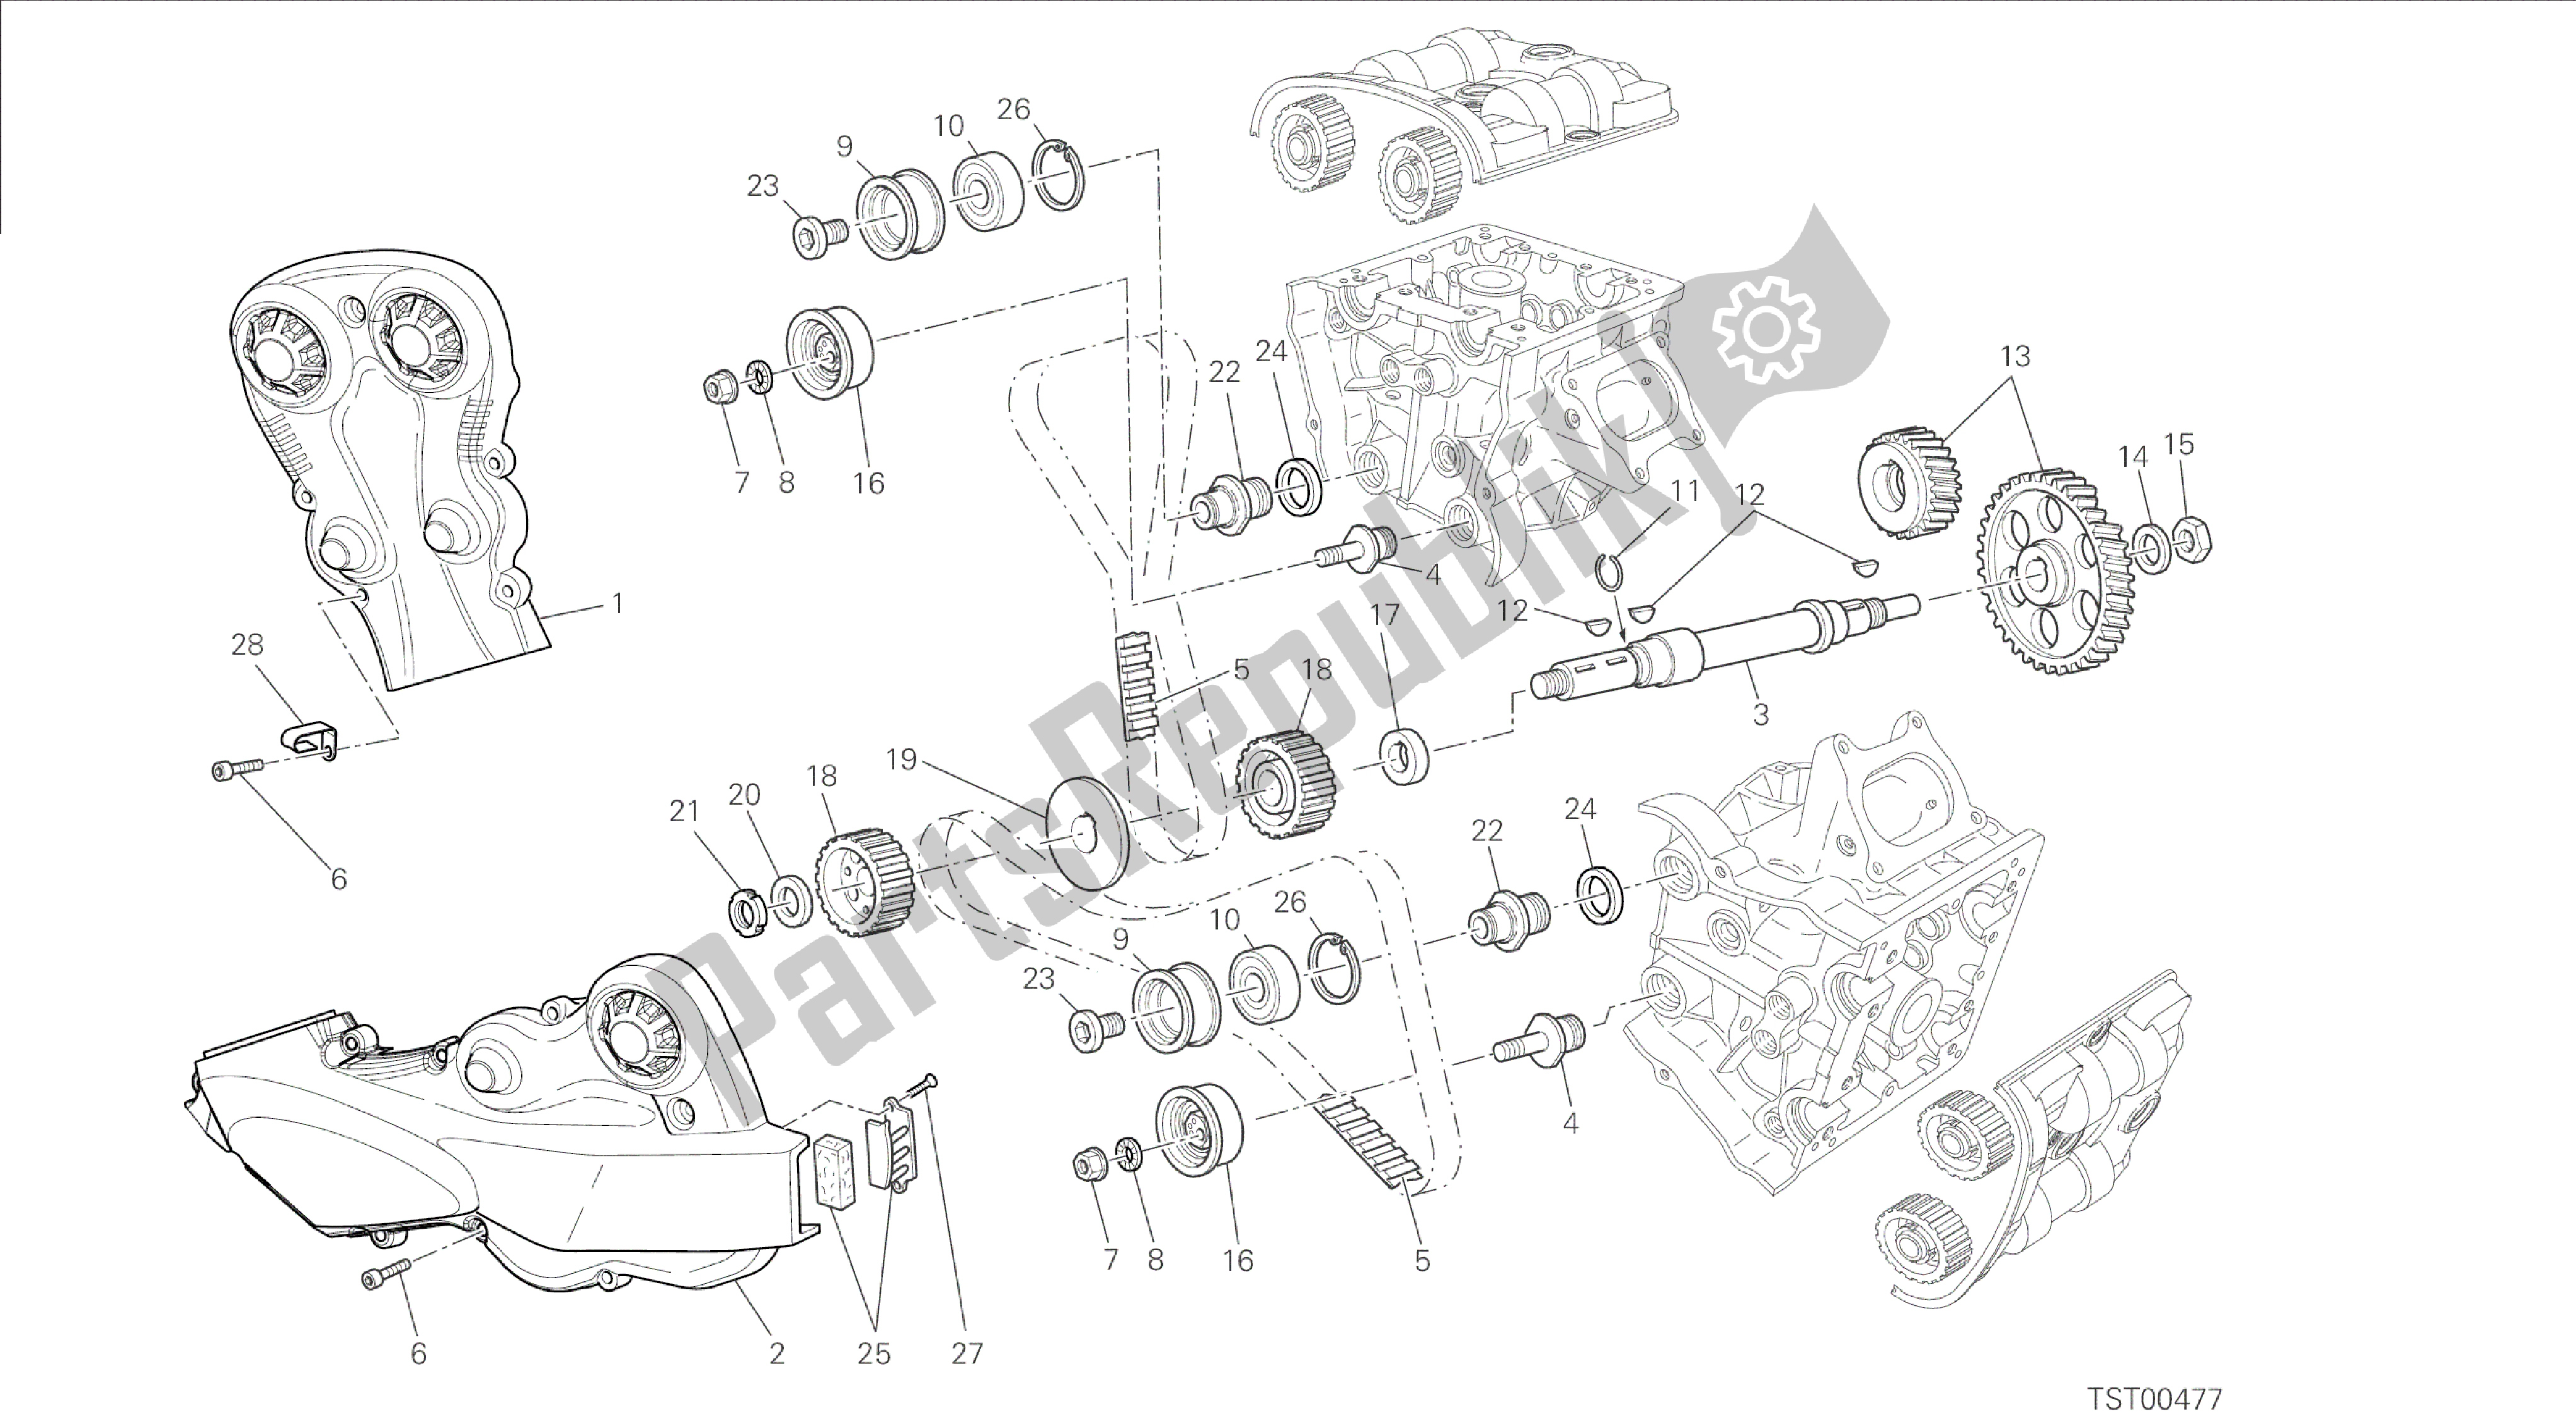 Alle onderdelen voor de Tekening 008 - Distributieriem [mod: F848; Xst: Aus, Bra, Chn, Eur, Fra, Jap, Tha] Groep Engine van de Ducati Streetfighter 848 2014